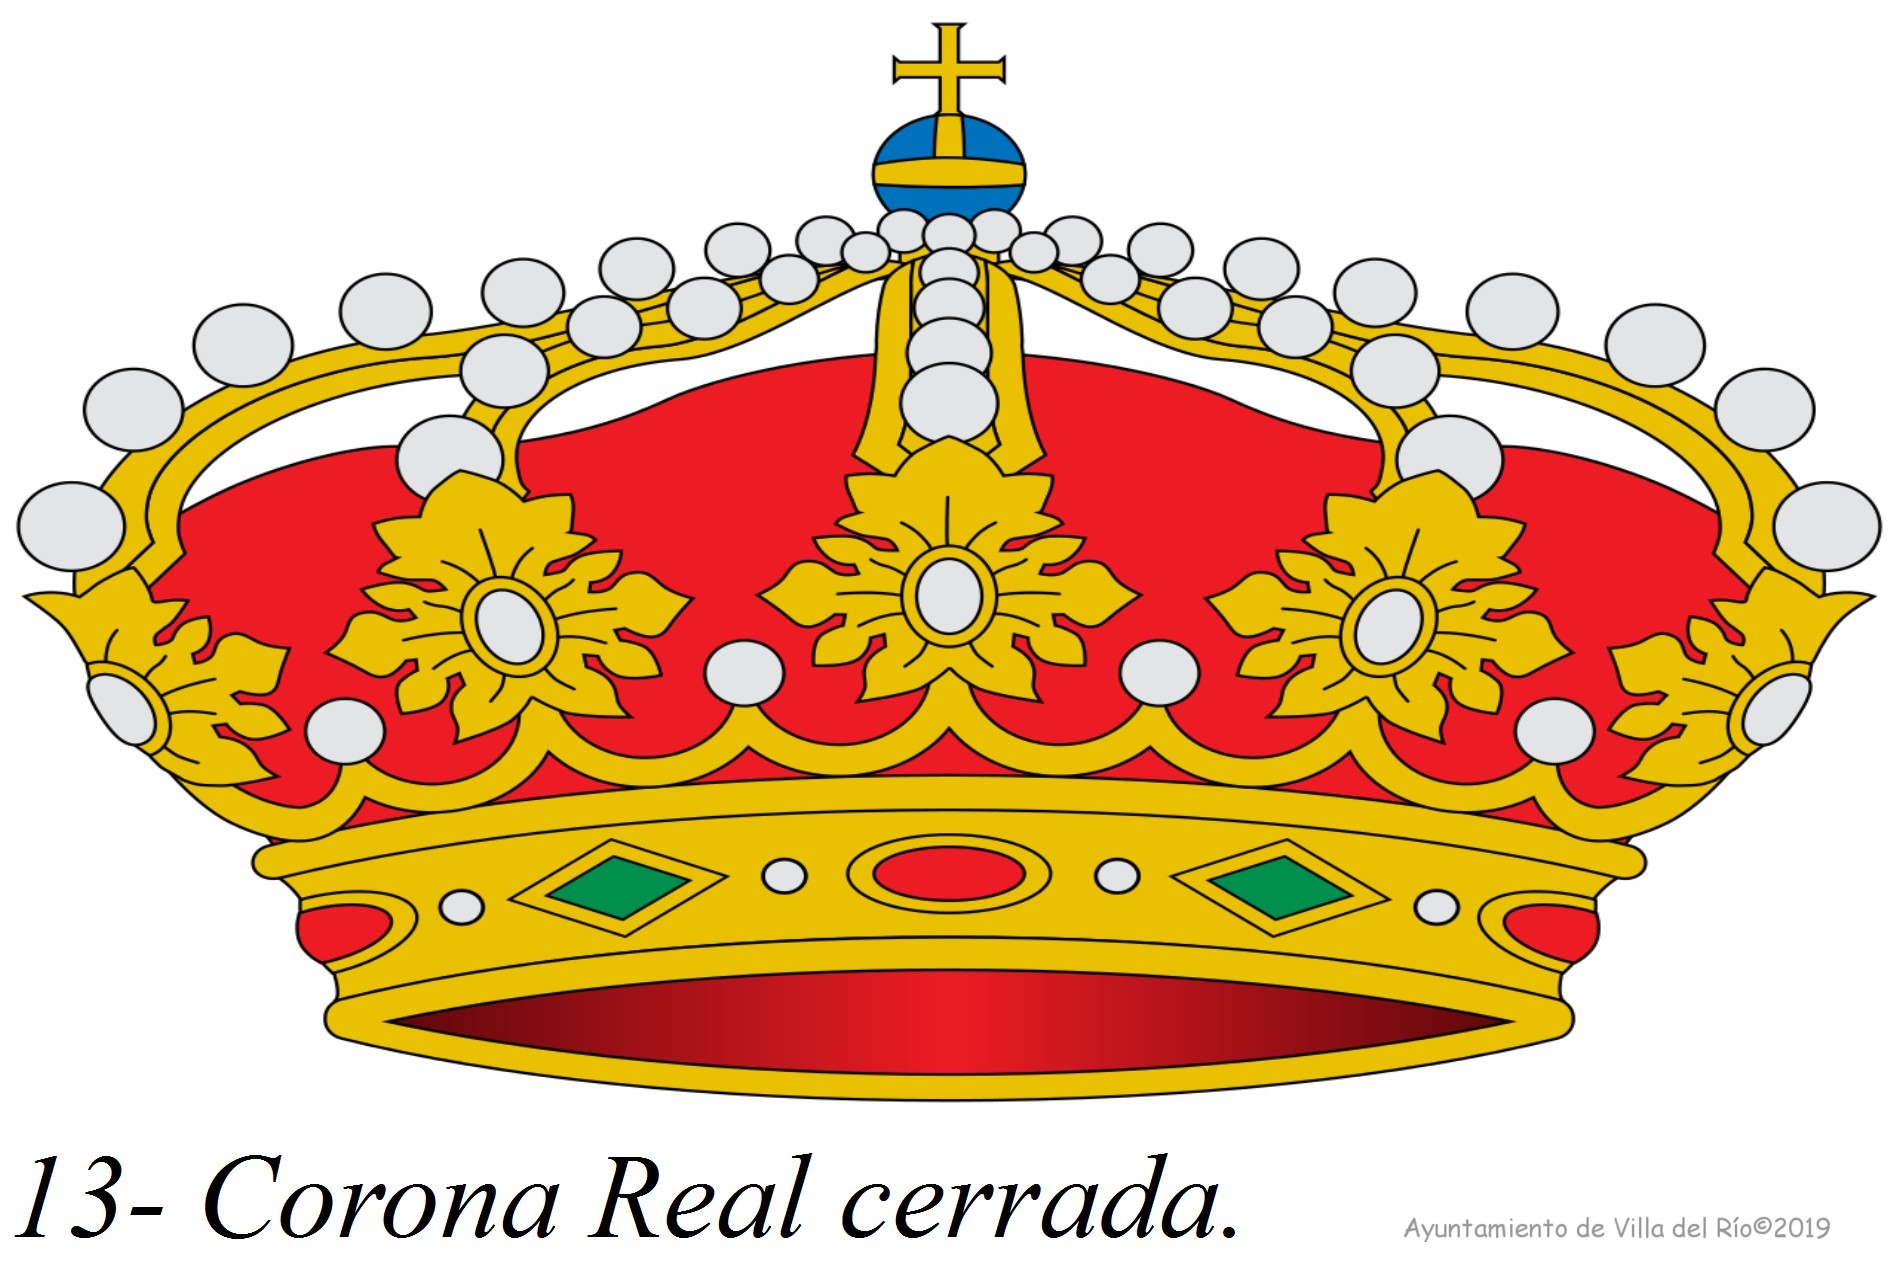 Corona Real Cerrada